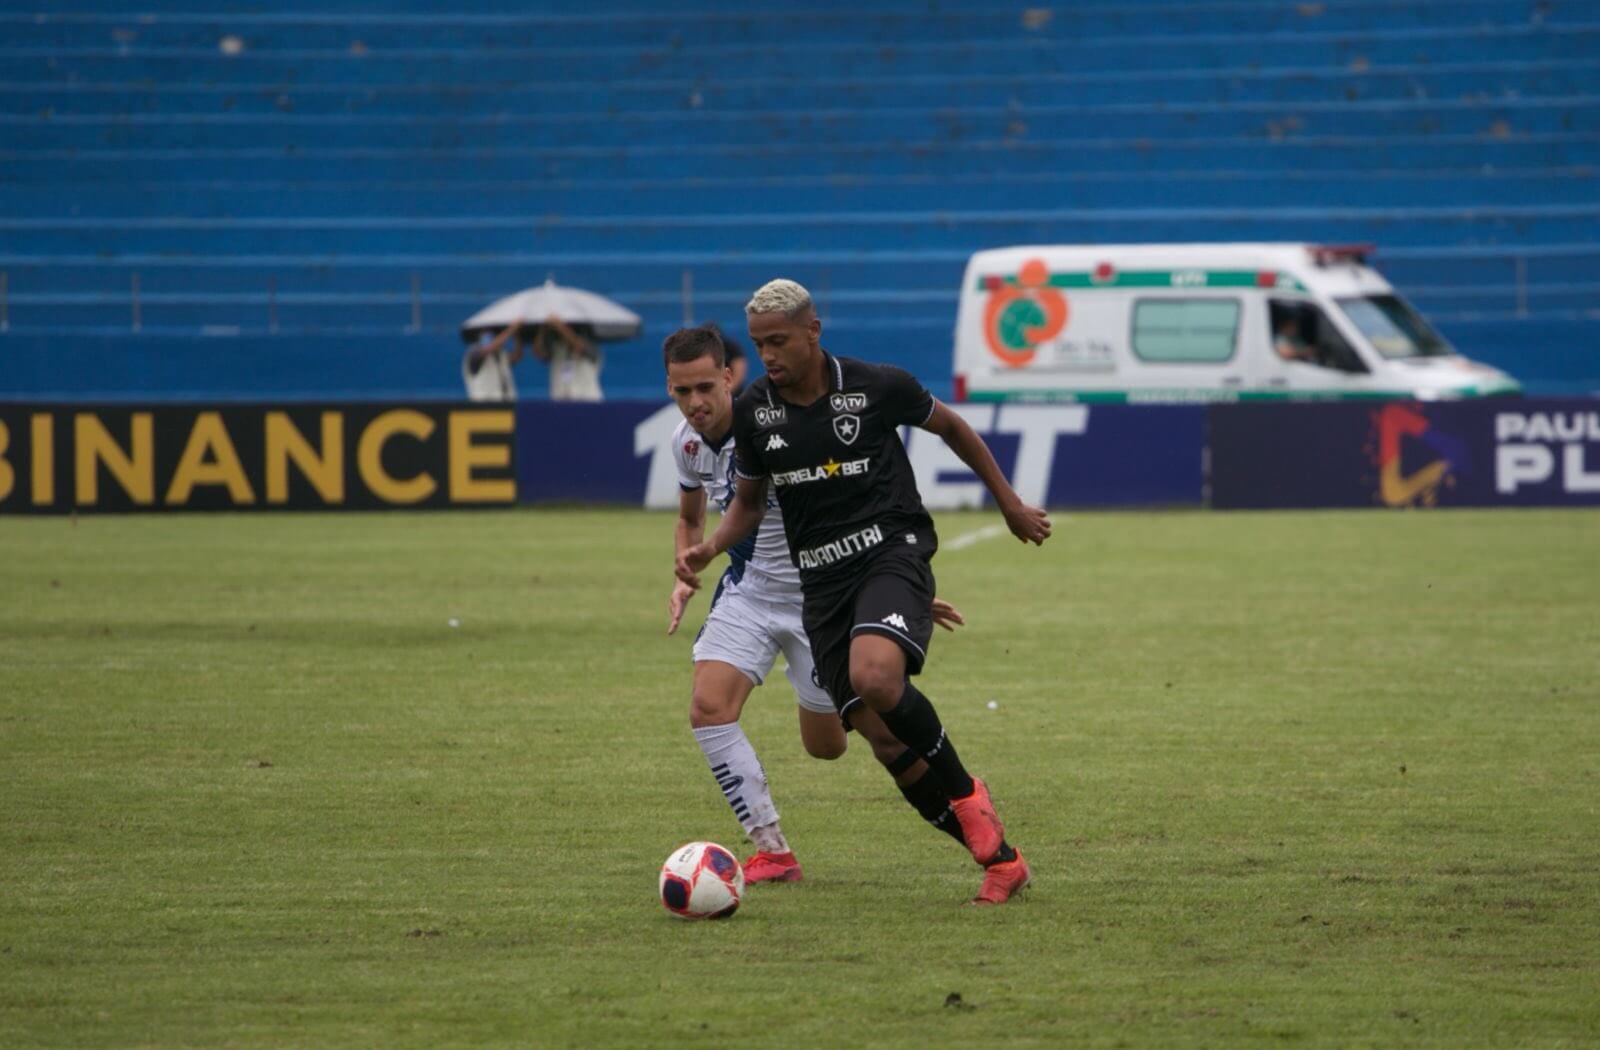 COPA SP: Botafogo avança em disputa de 20 pênaltis; Resende surpreende e paulistas mostram força